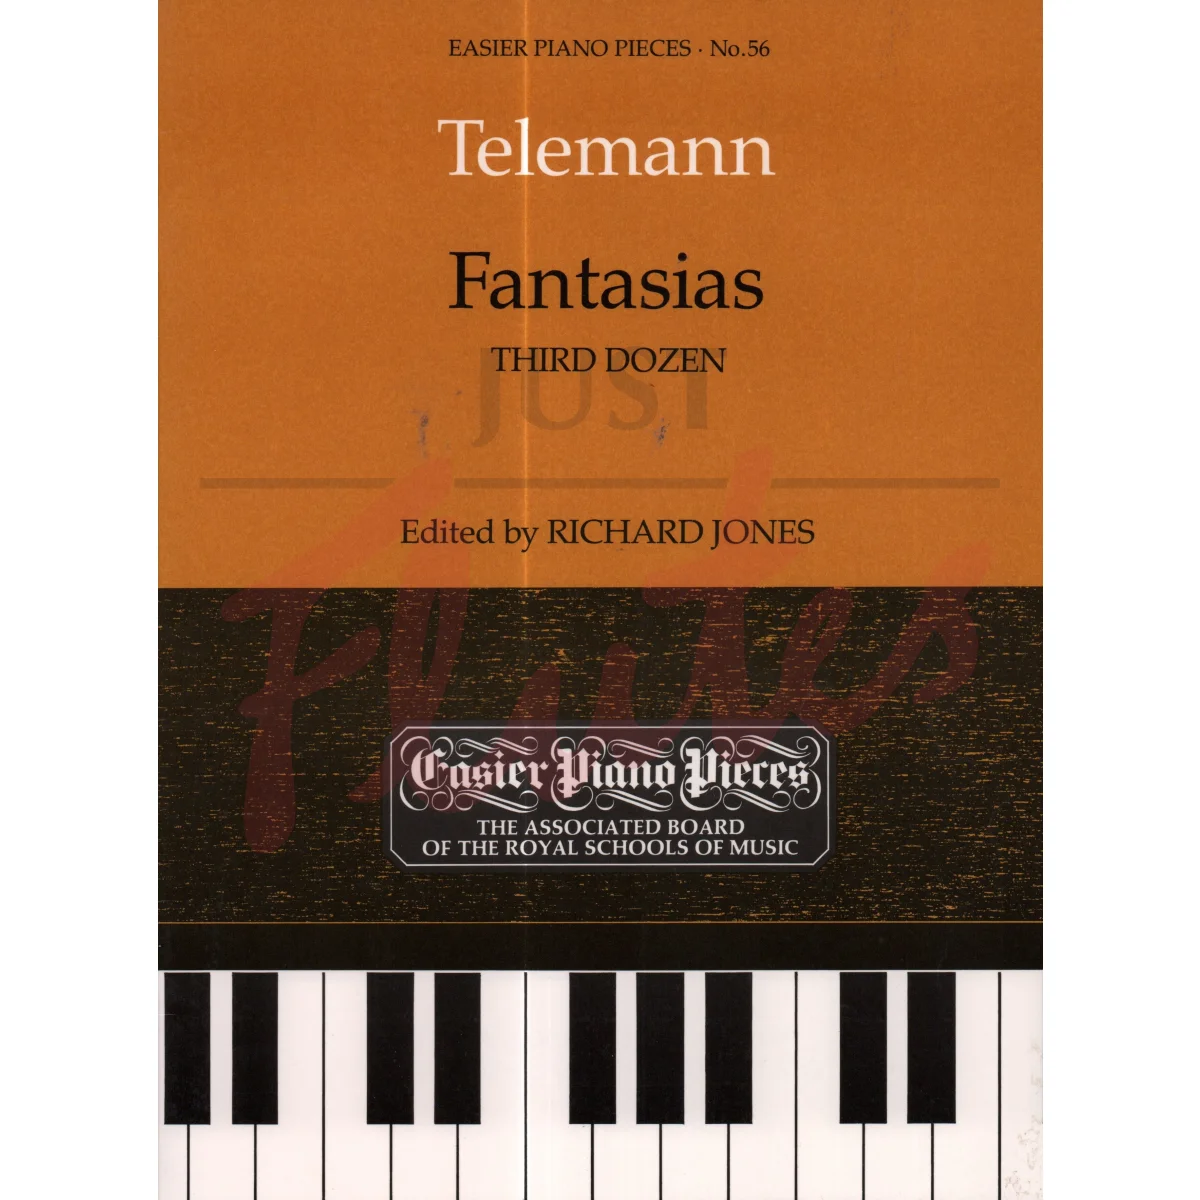 Fantasias: Third Dozen for Piano